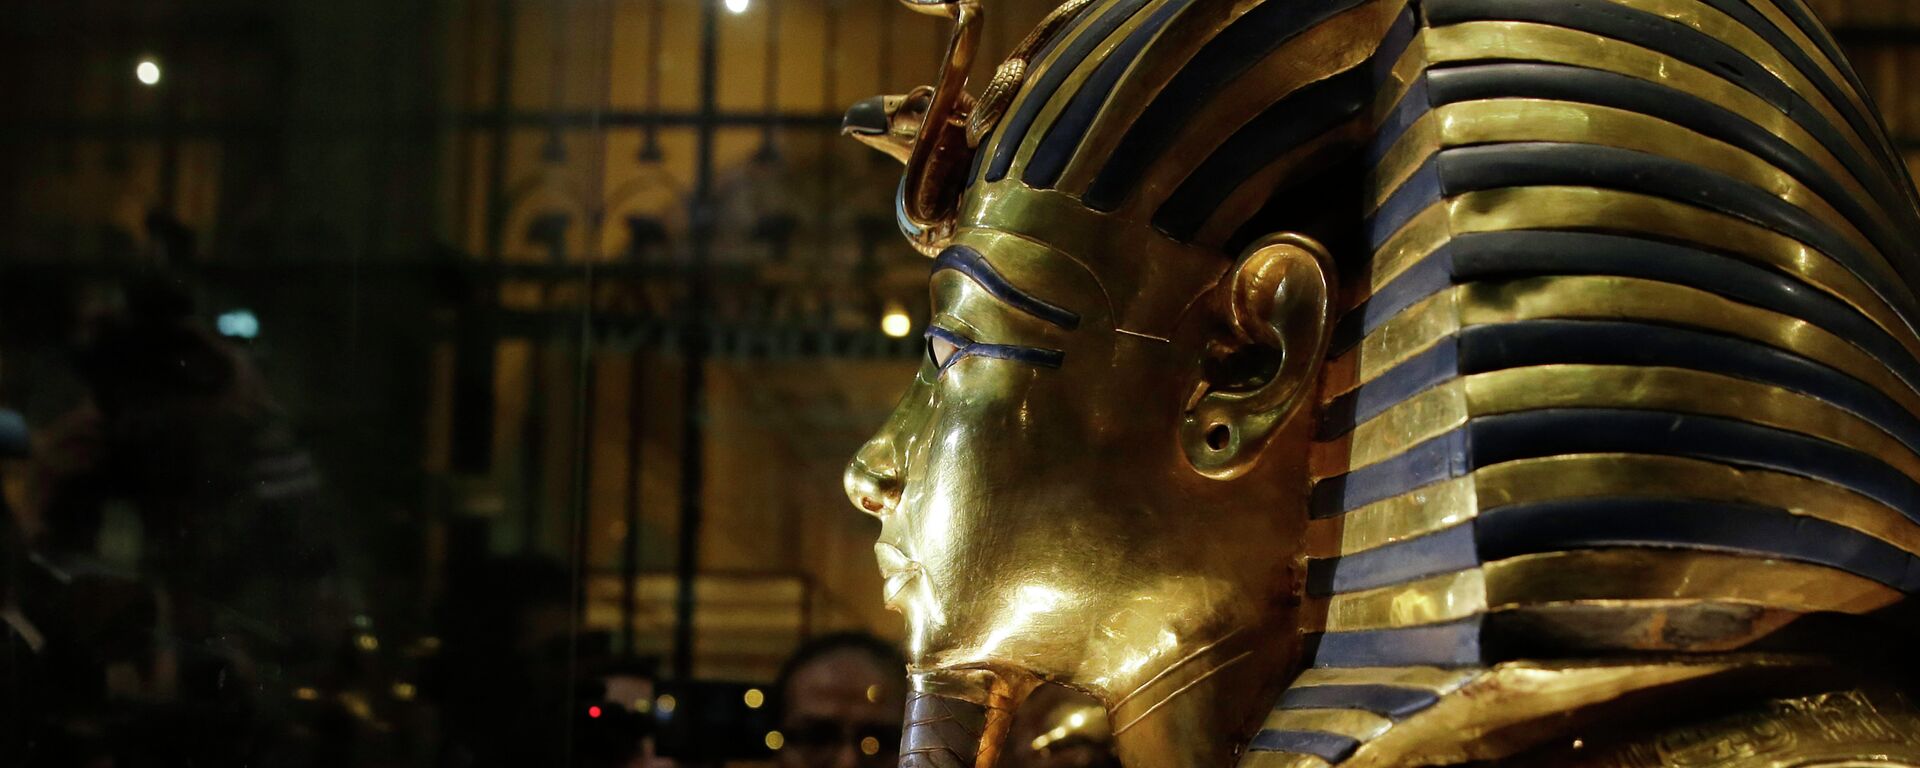 Zlatna maska kralja Tutankamona u Egipatskom muzeju u Kairu - Sputnik Srbija, 1920, 11.09.2021